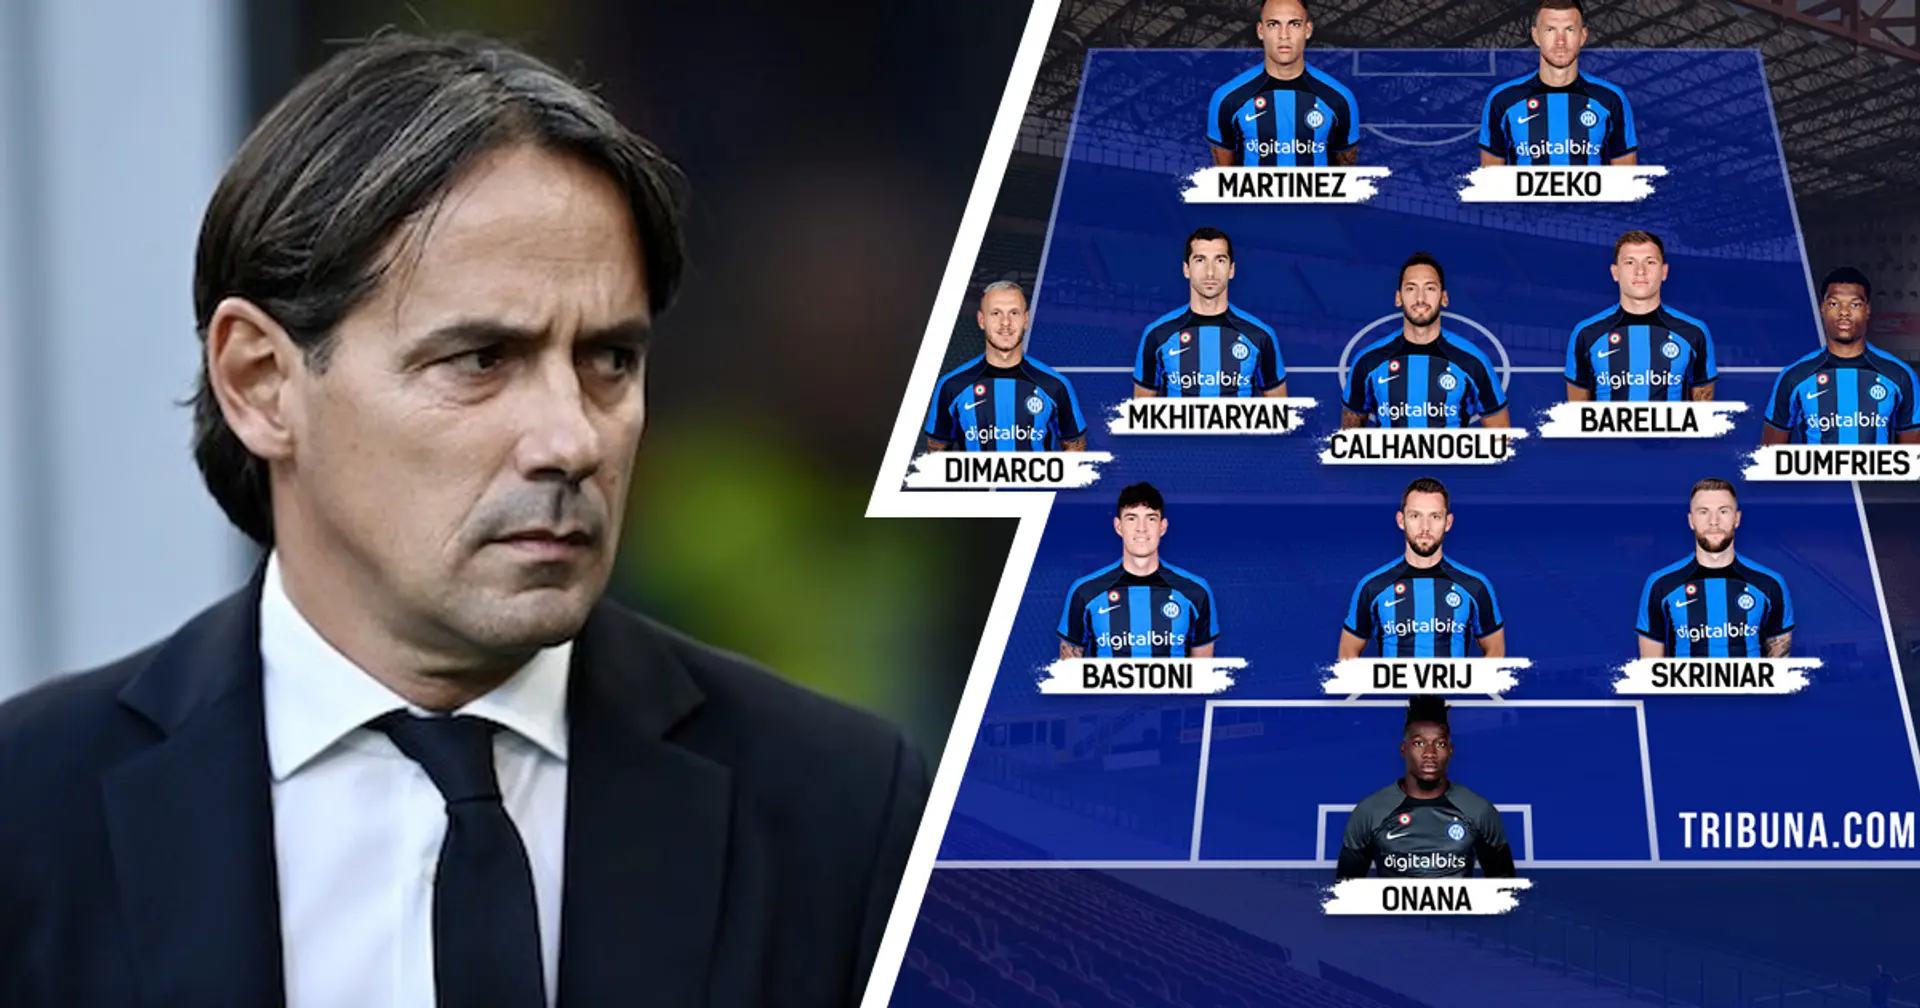 UFFICIALE| La formazione scelta da Inzaghi per la sfida con l'Atalanta: De Vrij dal 1', Brozovic in panchina